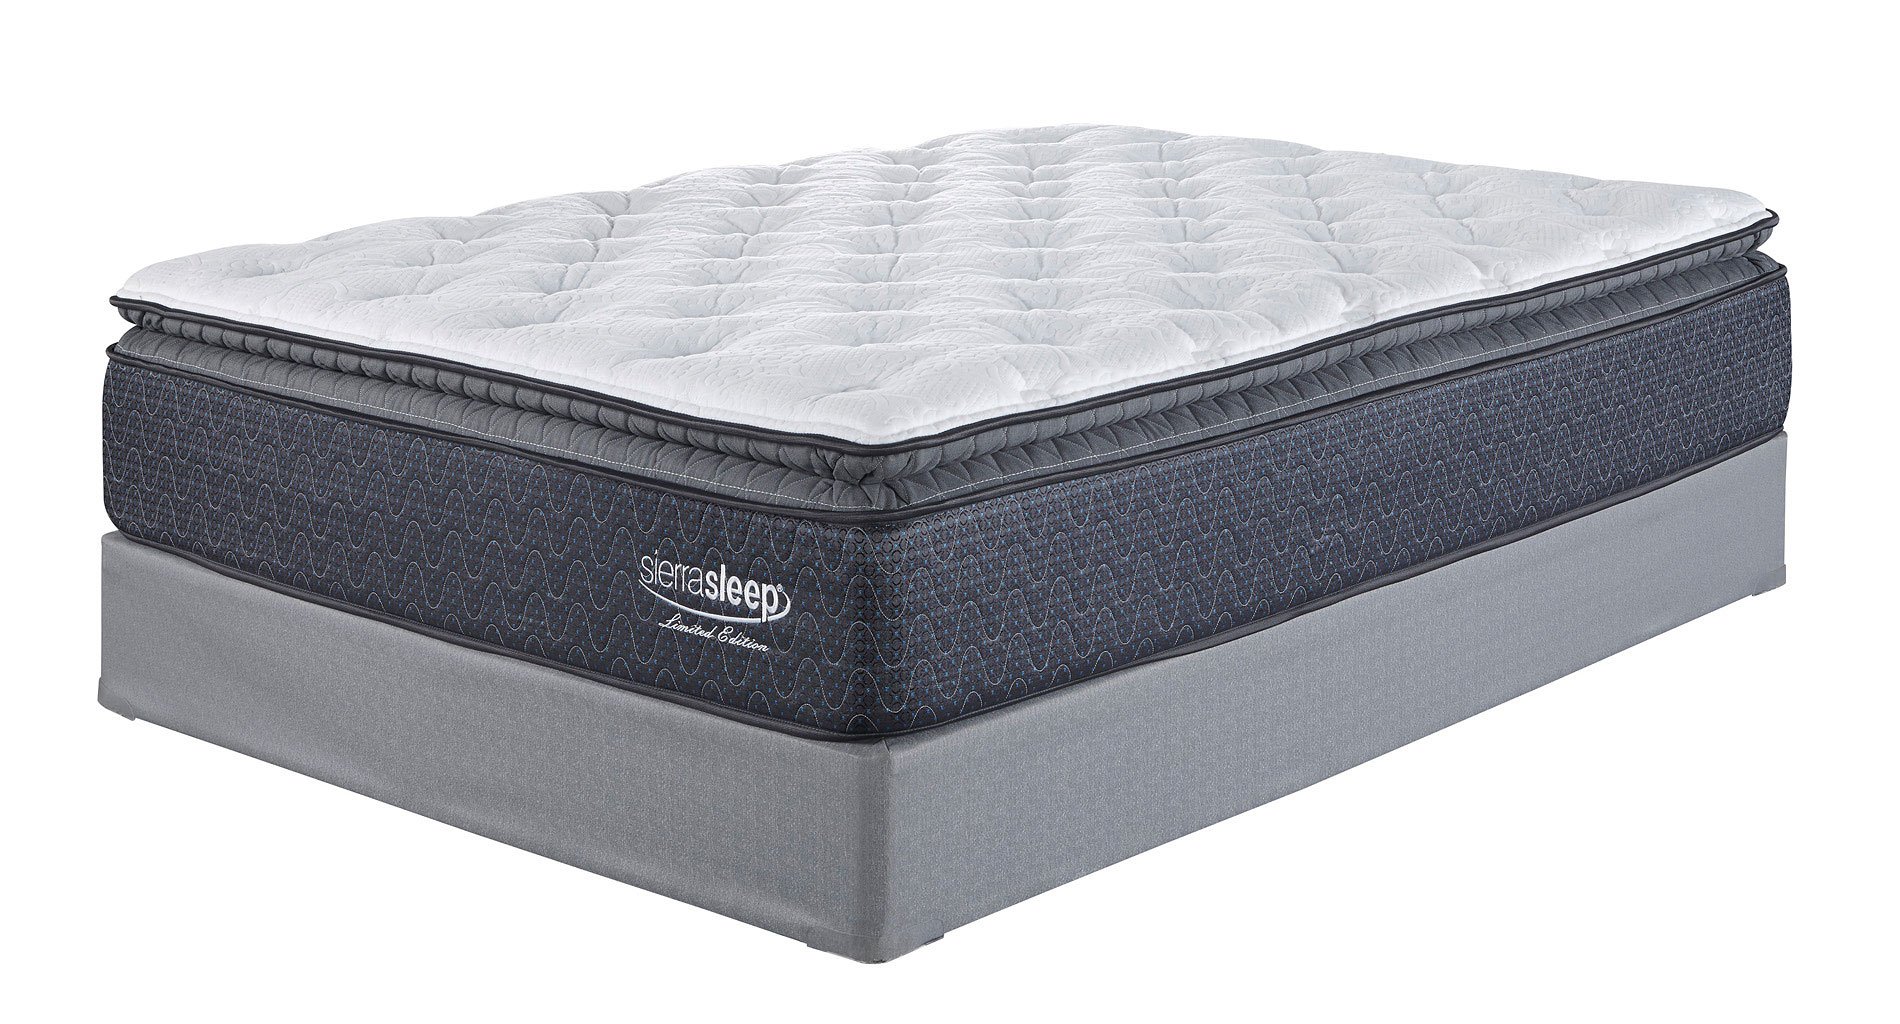 high pillow top mattress air matress